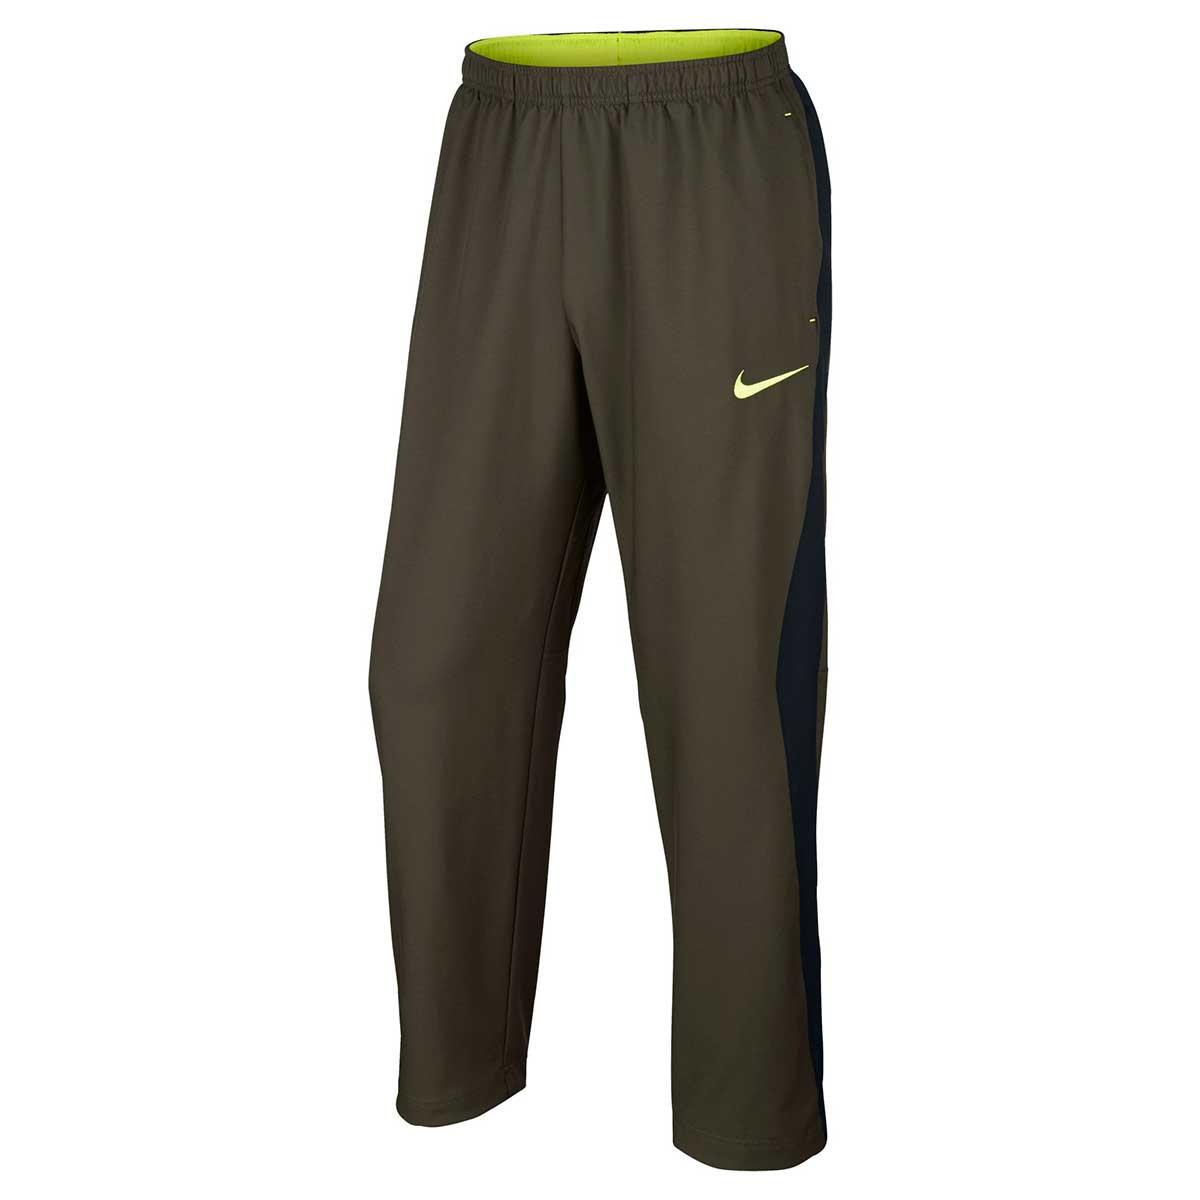 Nike Mens Dri-fit Track Pant (Khaki)